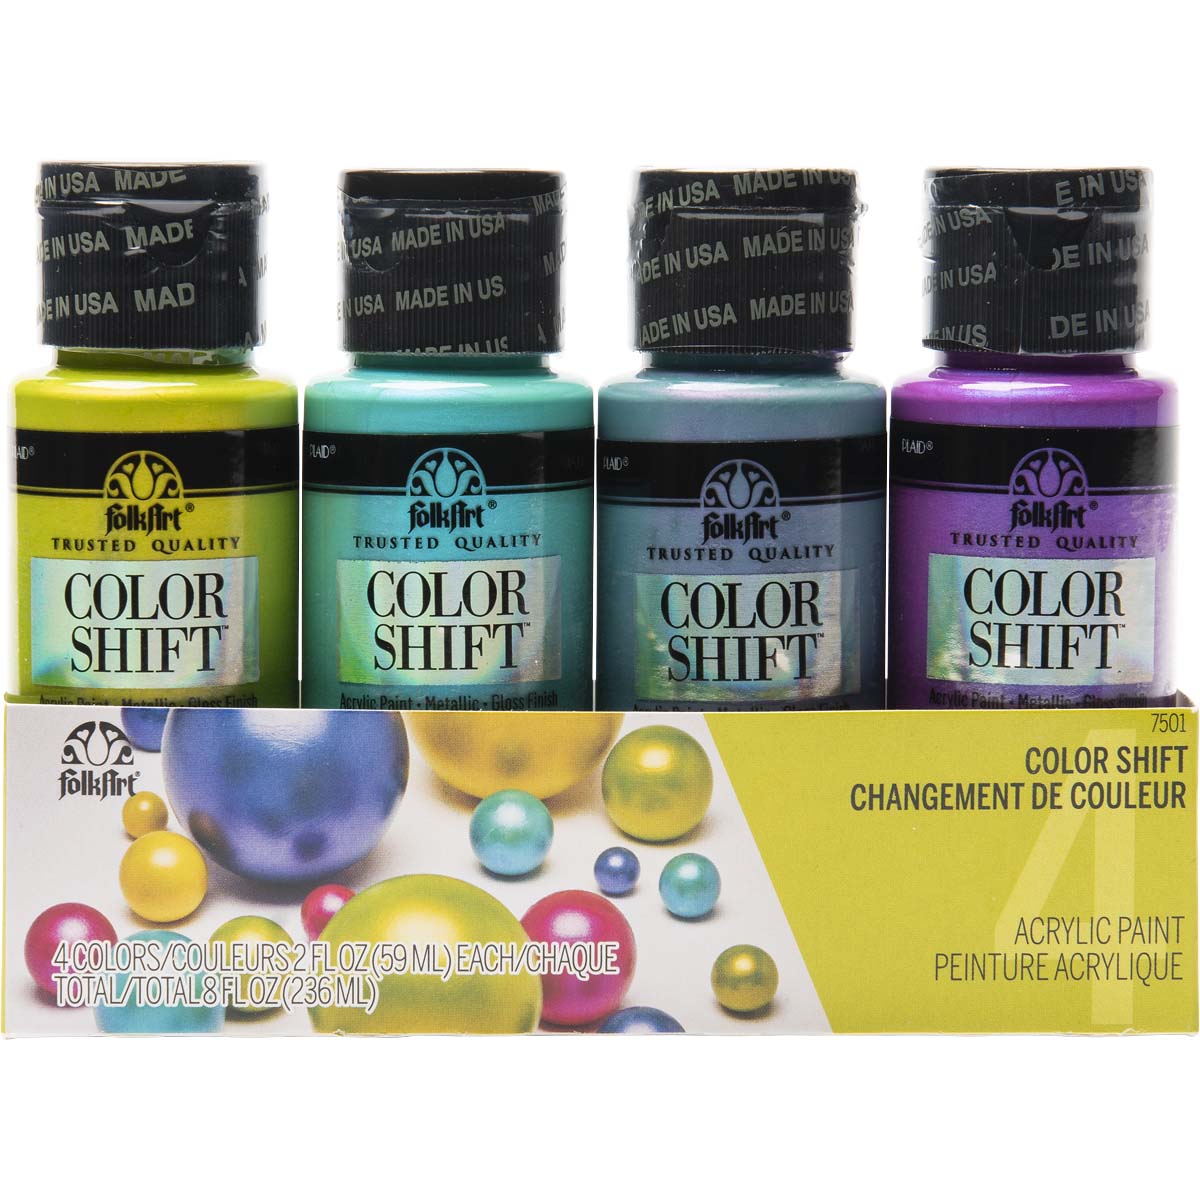 FolkArt ® Color Shift™ Acrylic Paint Set 4 Color - 7501